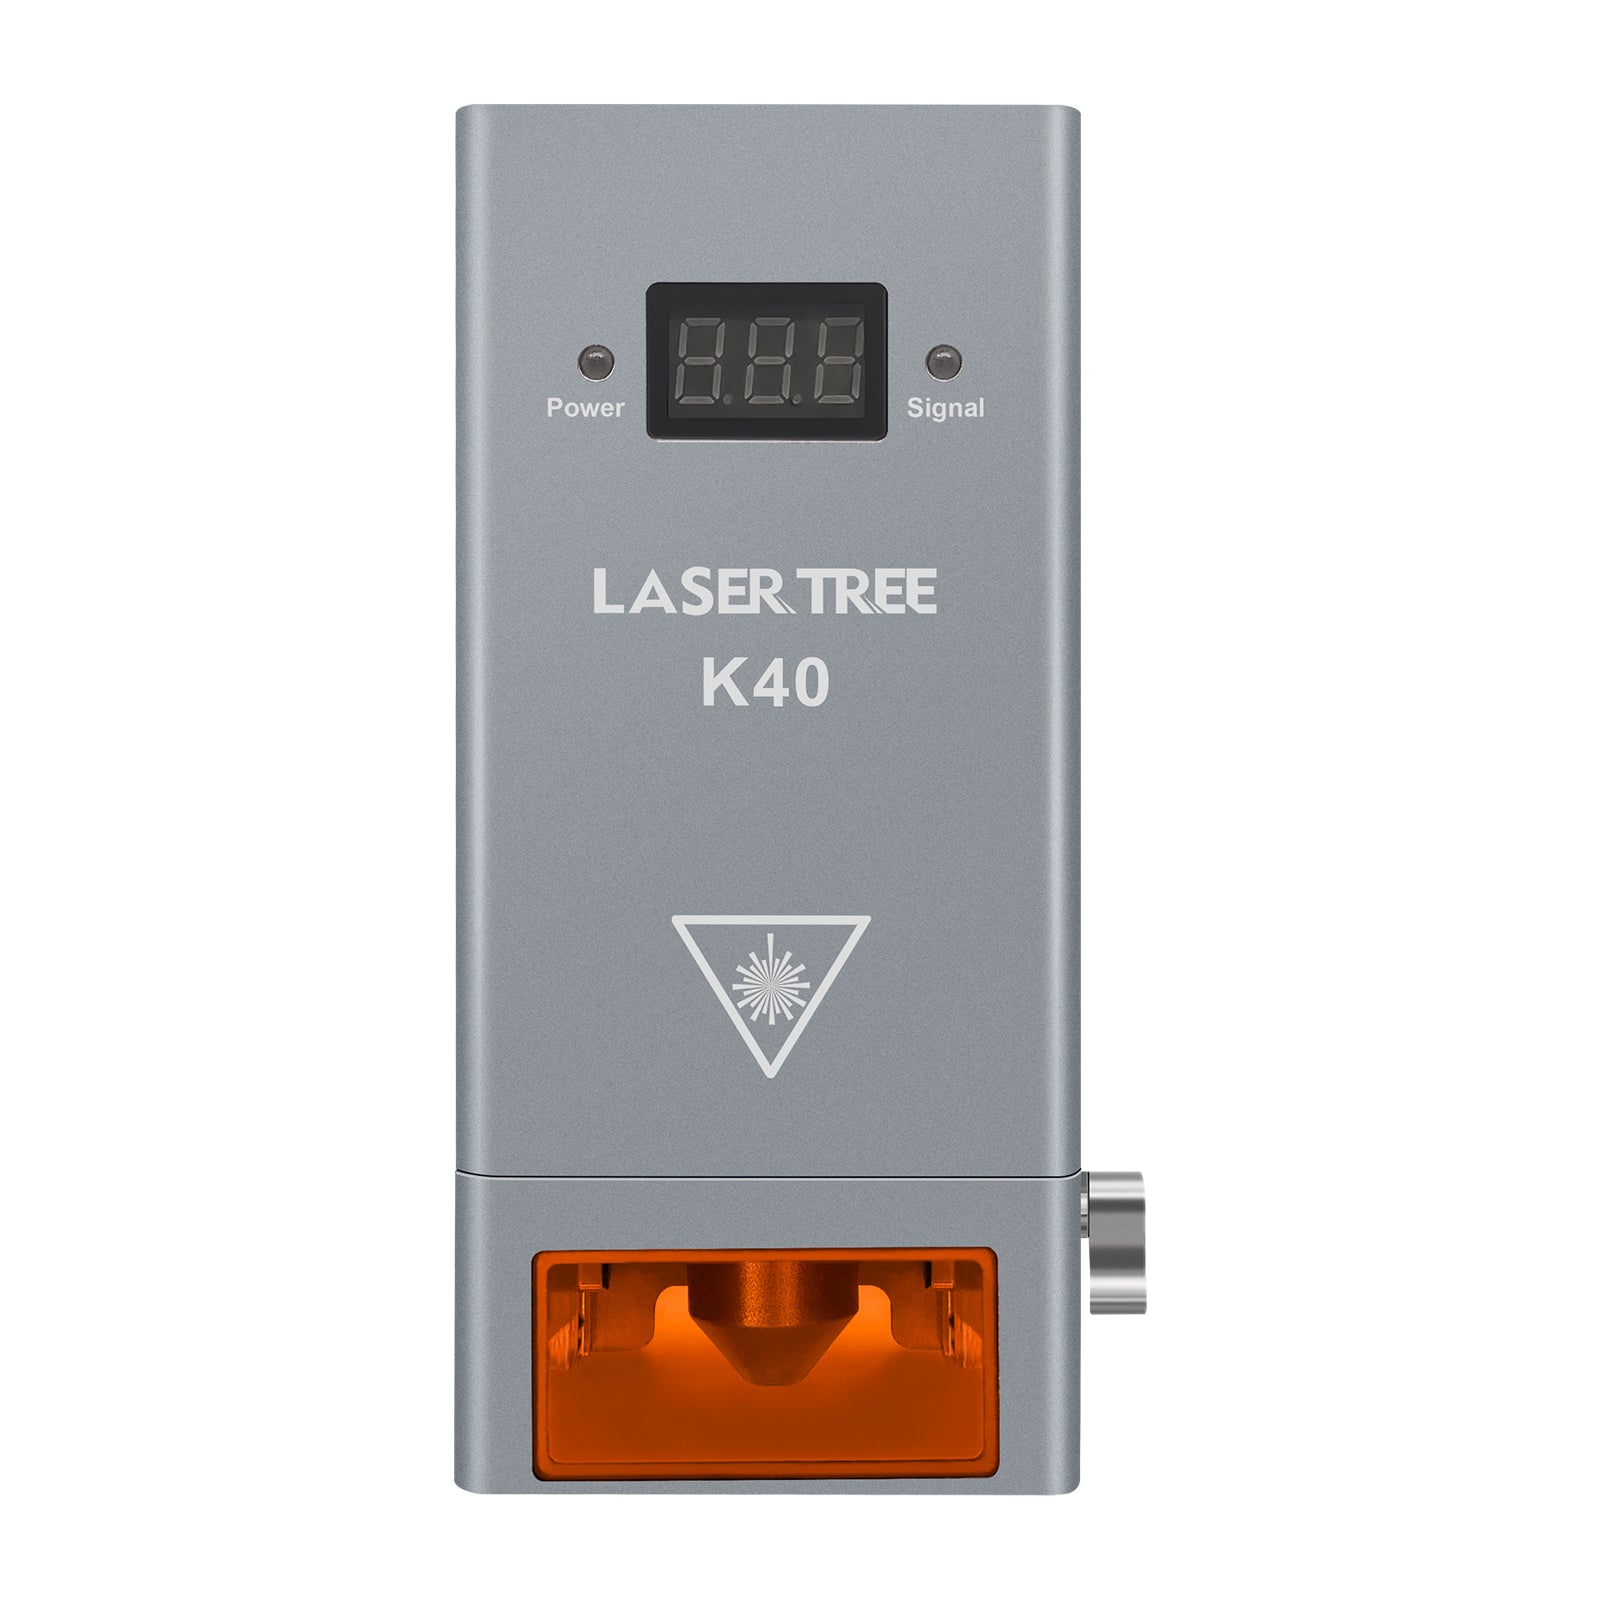 LASER TREE K40 40W+ Optical Power Laser Module